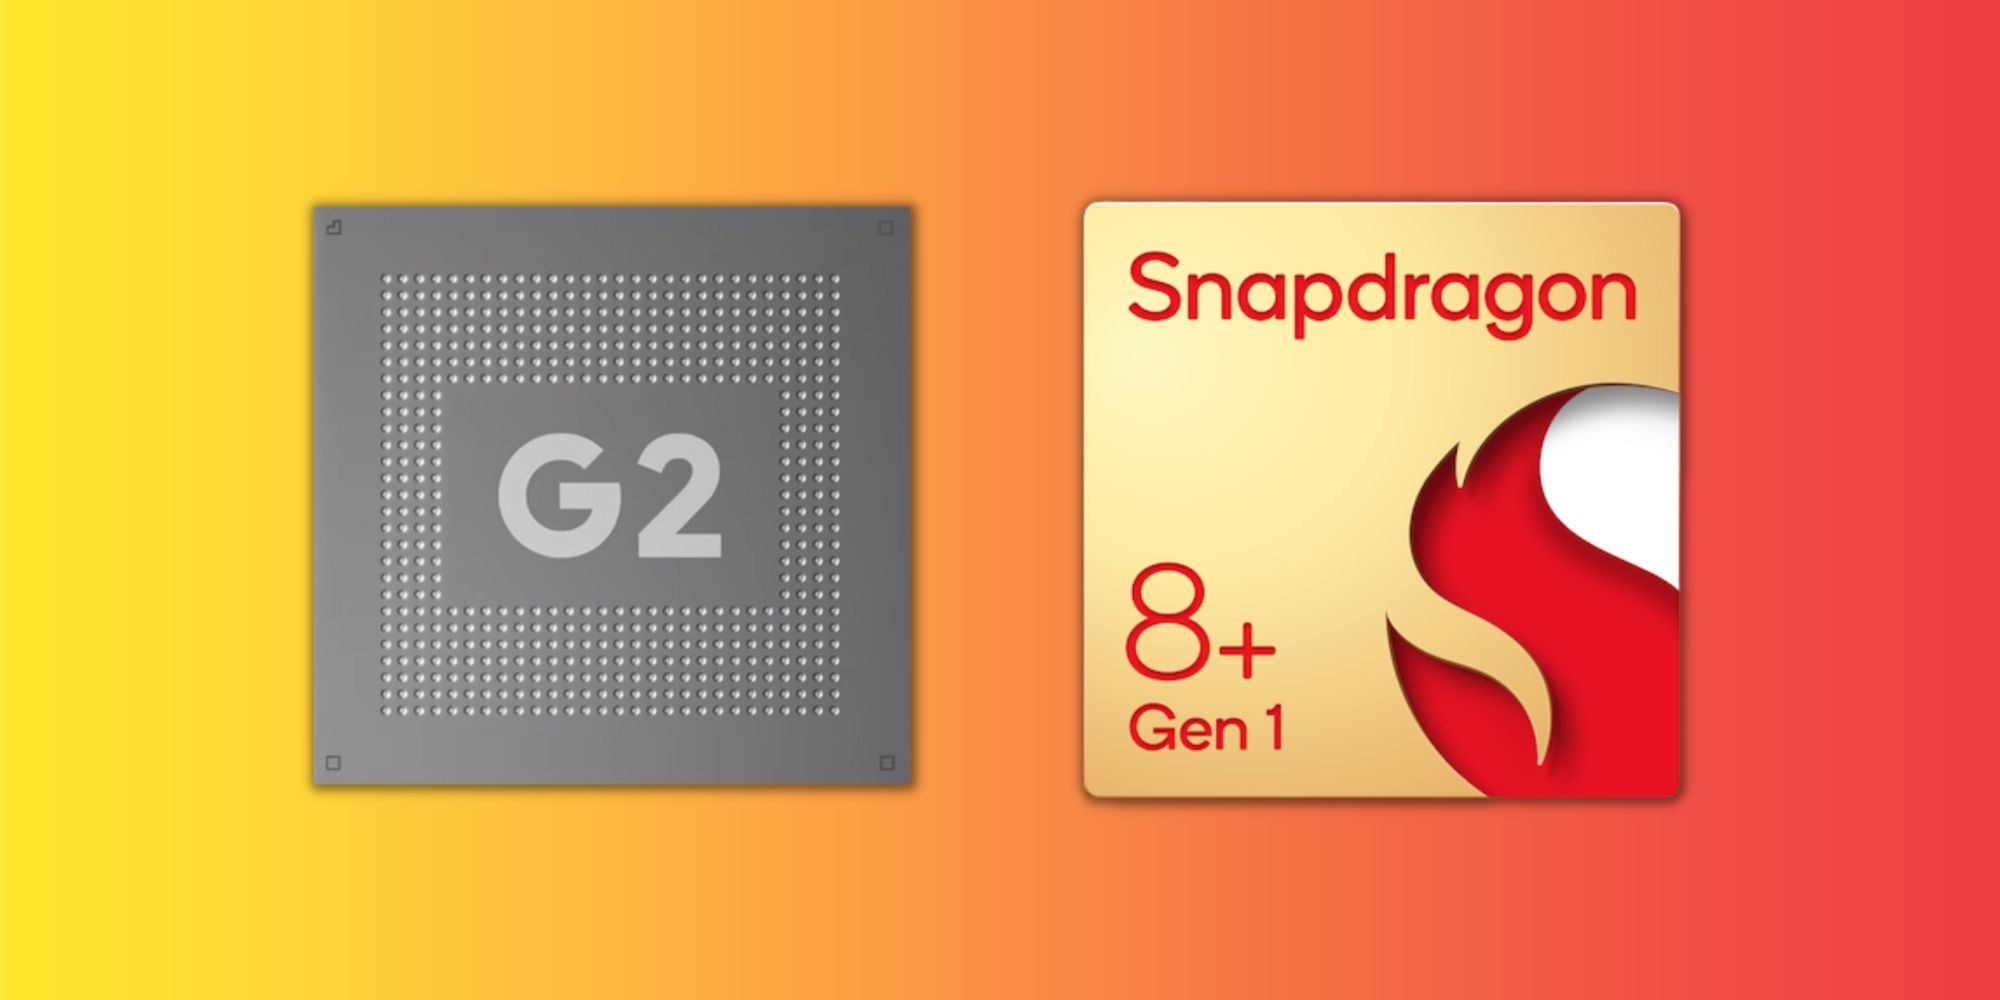 Google Tensor G2 and Snapdragon 8+ Gen 1 SoC